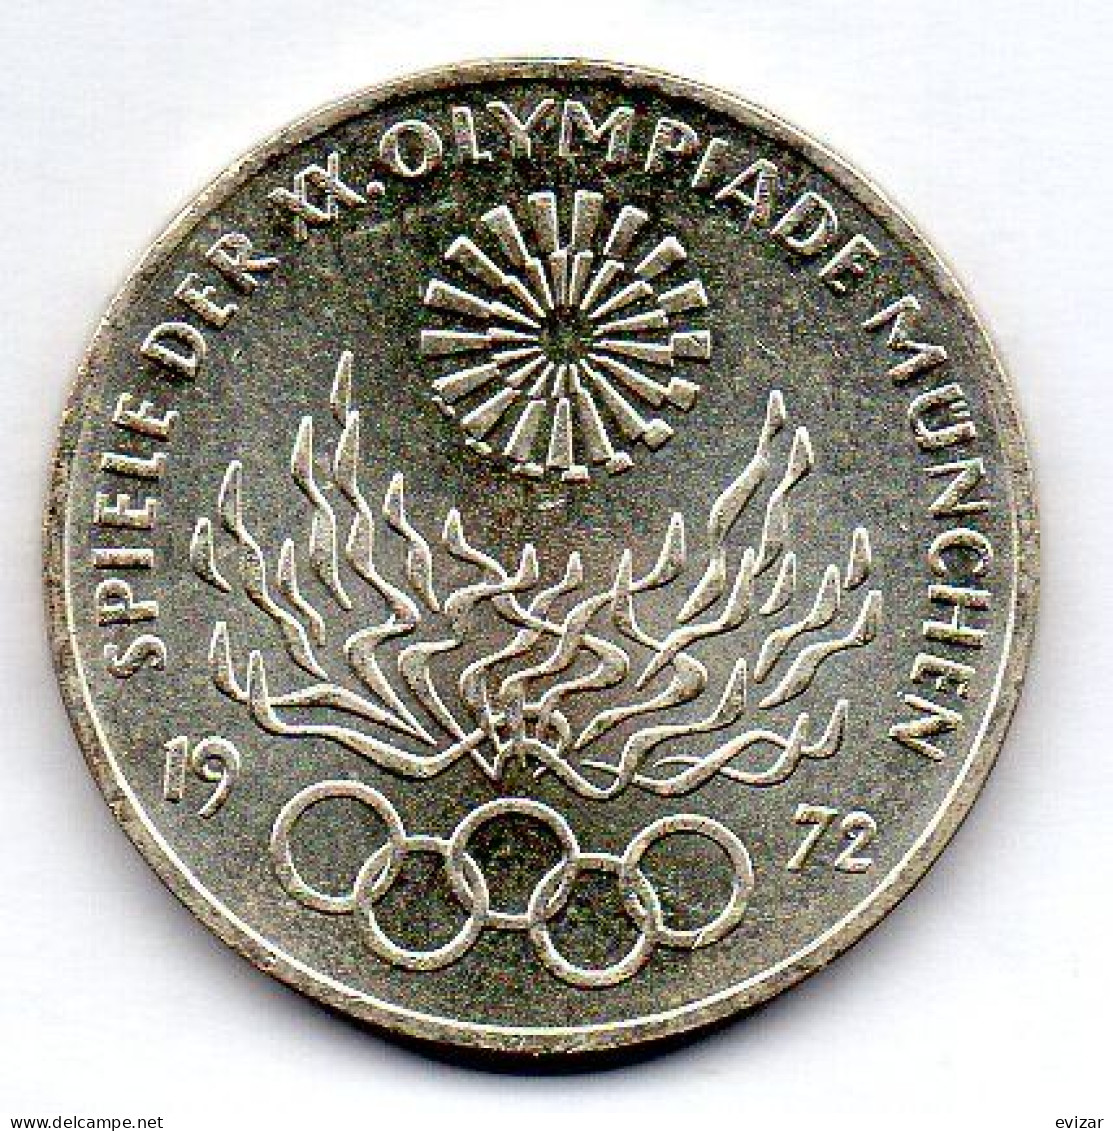 GERMANY - FEDERAL REPUBLIC, 10 Mark, Silver, Year 1972-G, KM # 135 - 10 Marchi